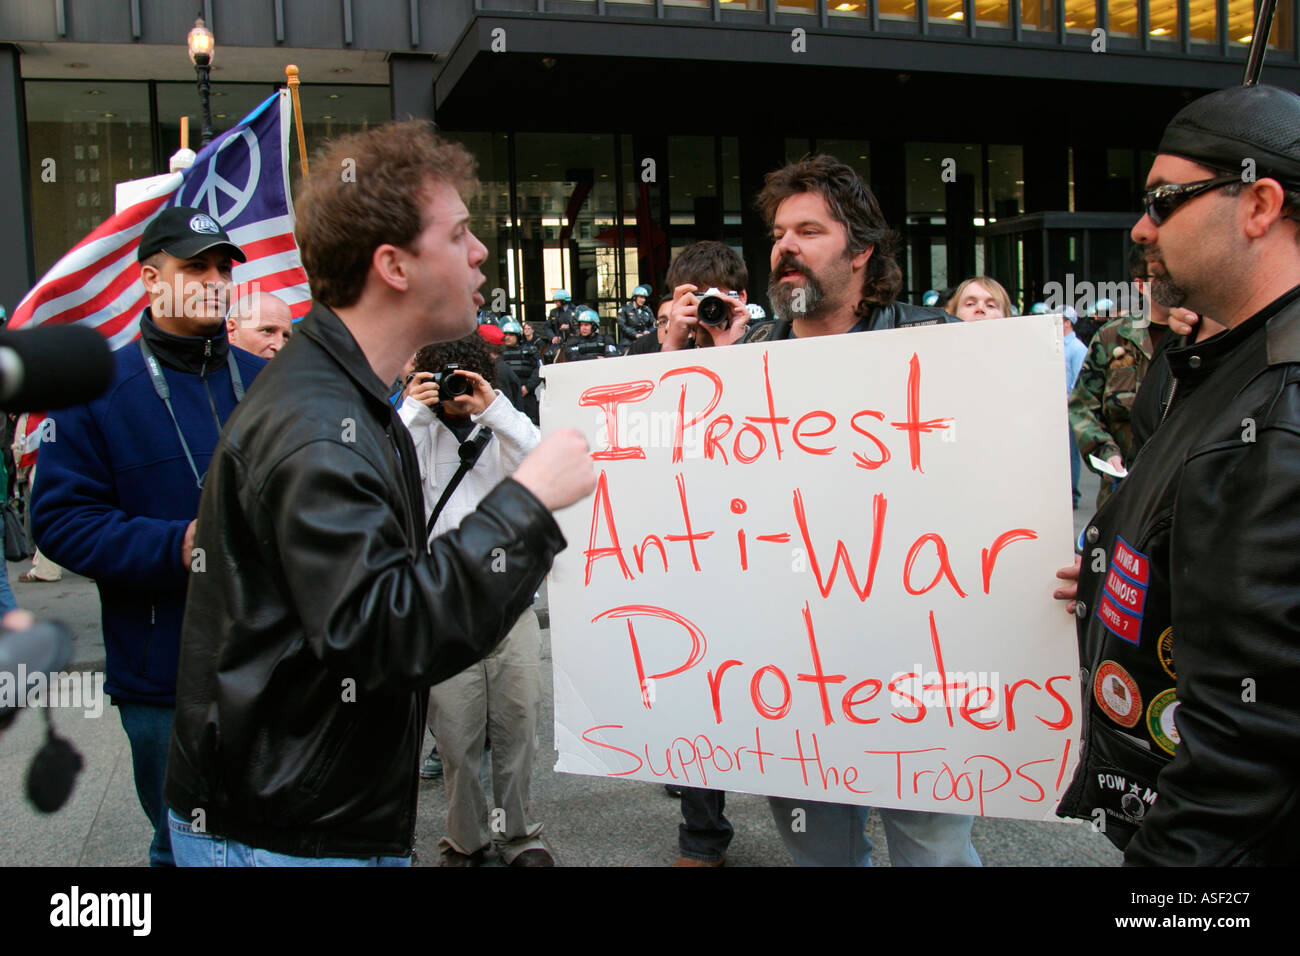 Chicago Anti Krieg Aktivist argumentiert mit einem Veteran während einer Kundgebung gegen den Krieg im Irak Stockfoto